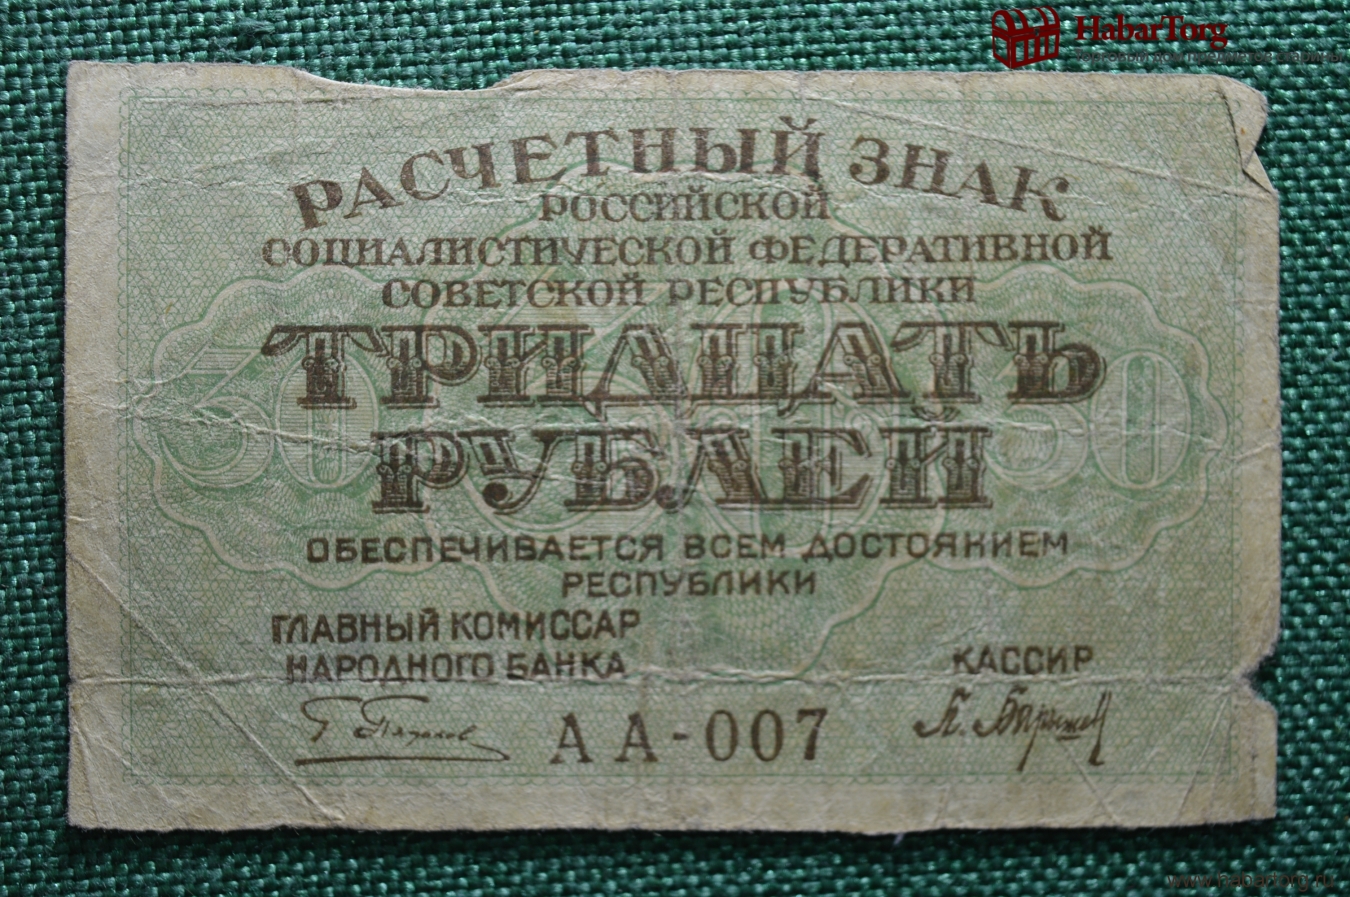 75 рублей 30